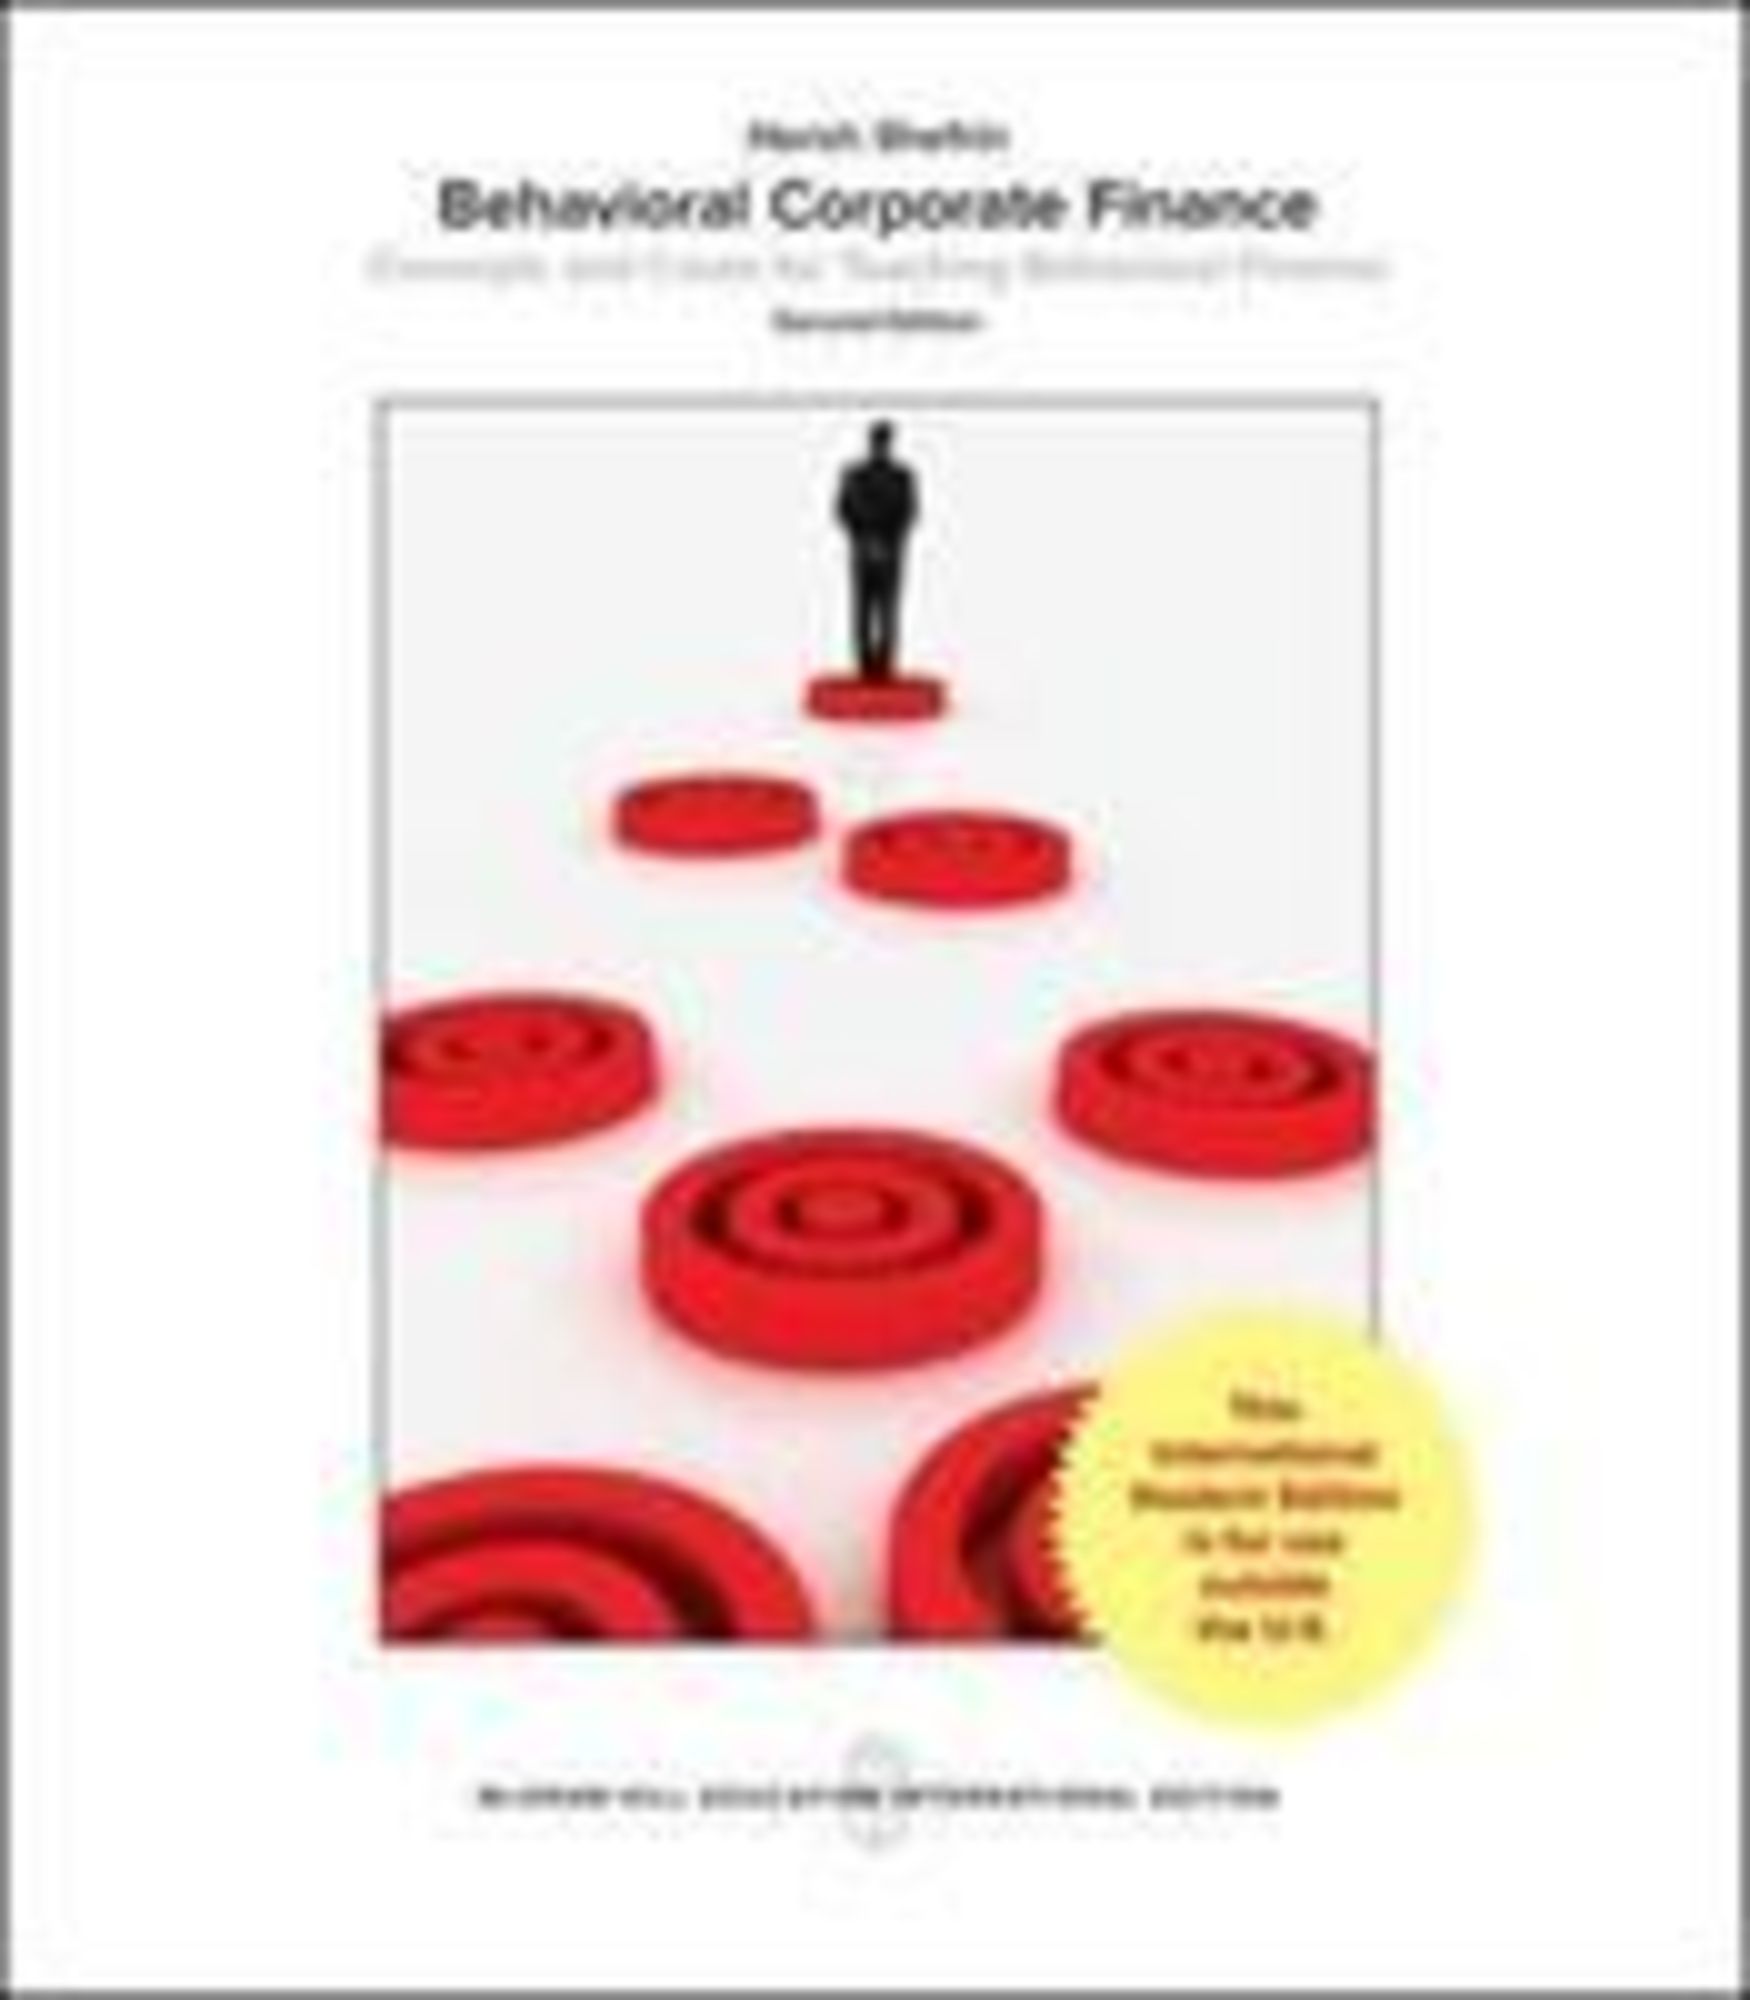 Behavioral　'Taschenbuch'　Corporate　Finance'　von　'Hersh　Shefrin'　'978-1-259-25486-4'